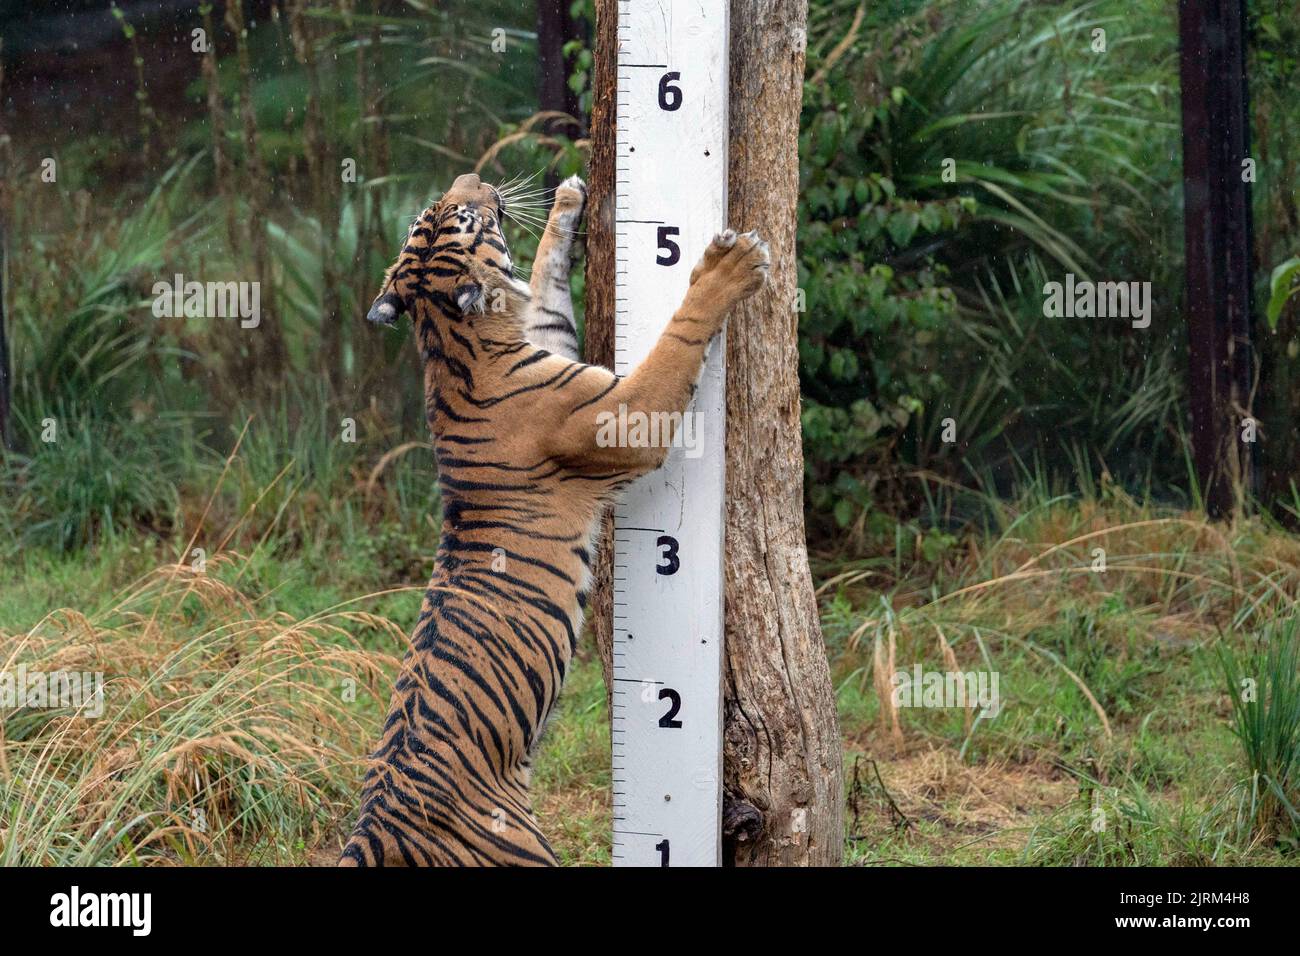 Geysha, die Sumatran, wird während des jährlichen Wiegevorgangs im ZSL London Zoo, London, ihre Körpergröße gemessen. Bilddatum: Donnerstag, 25. August 2022. Stockfoto